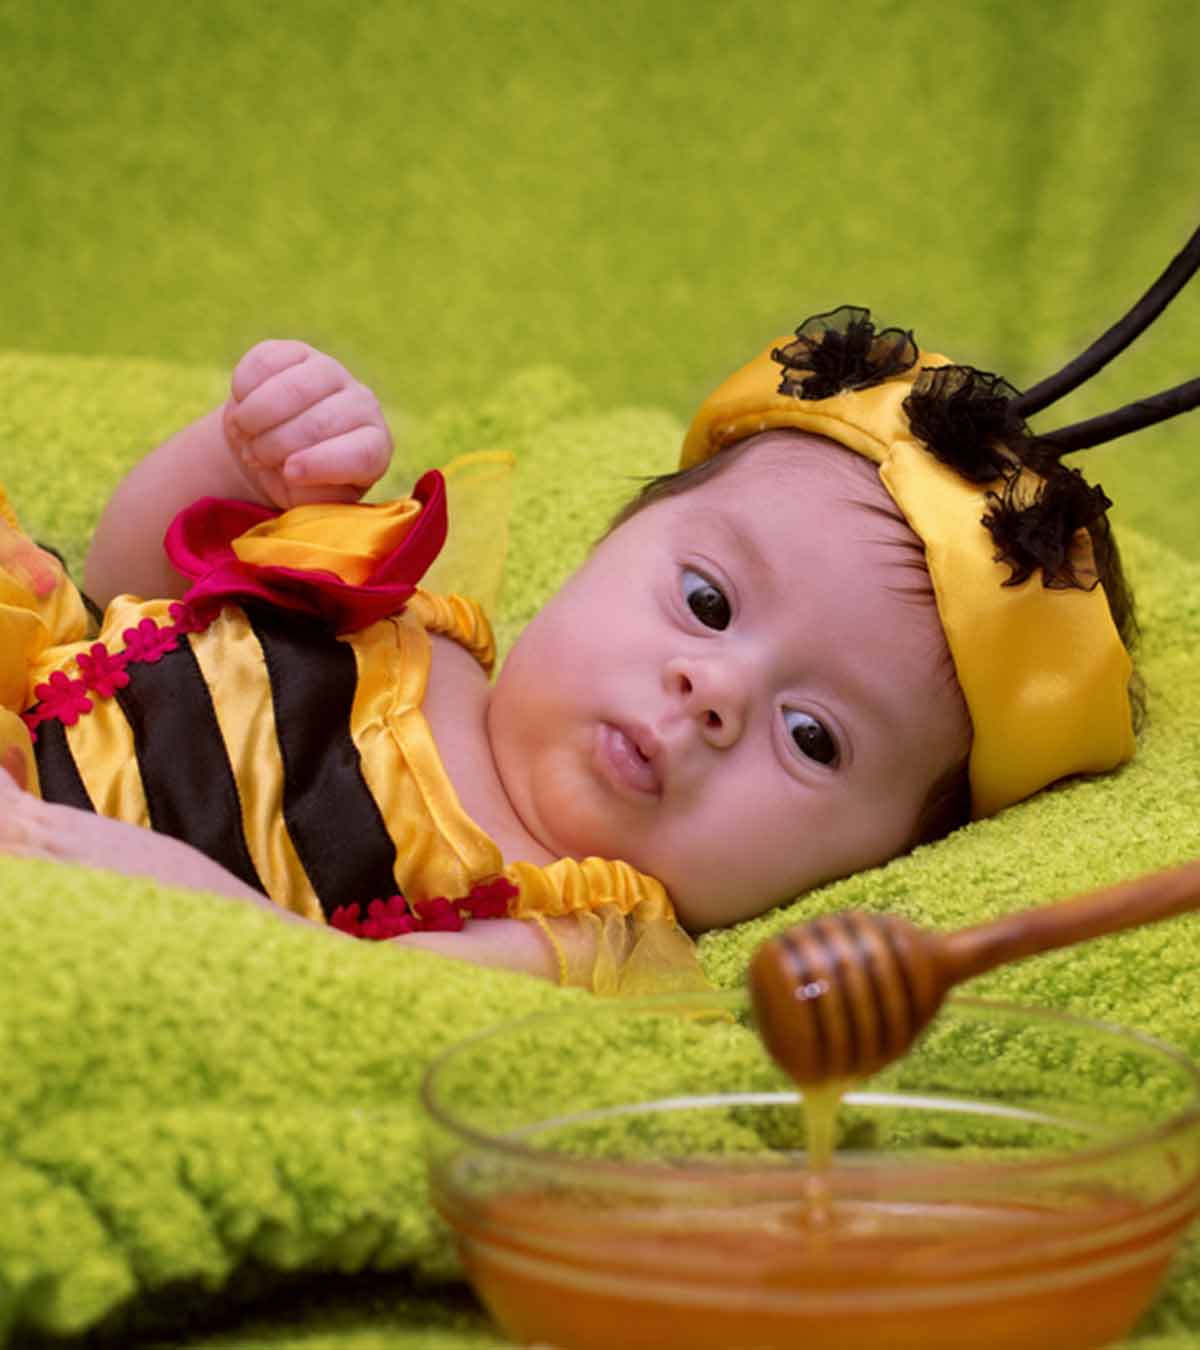 बच्चों के लिए शहद: कब और कैसे खिलाएं, फायदे व नुकसान | Benefits Of Honey For Baby In Hindi